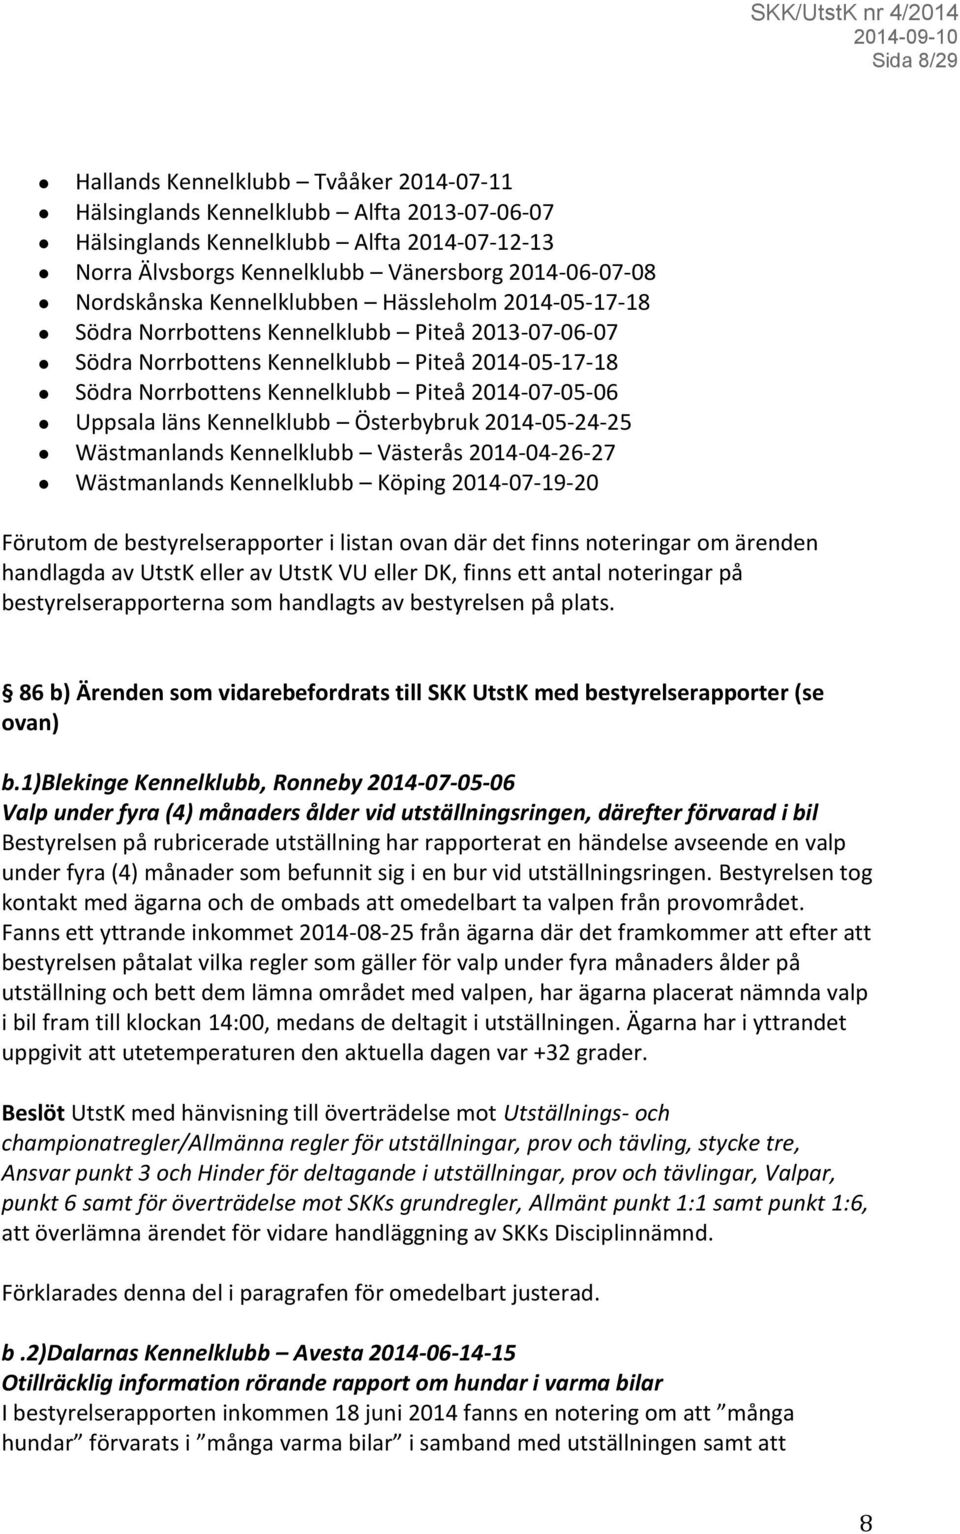 2014-07-05-06 Uppsala läns Kennelklubb Österbybruk 2014-05-24-25 Wästmanlands Kennelklubb Västerås 2014-04-26-27 Wästmanlands Kennelklubb Köping 2014-07-19-20 Förutom de bestyrelserapporter i listan